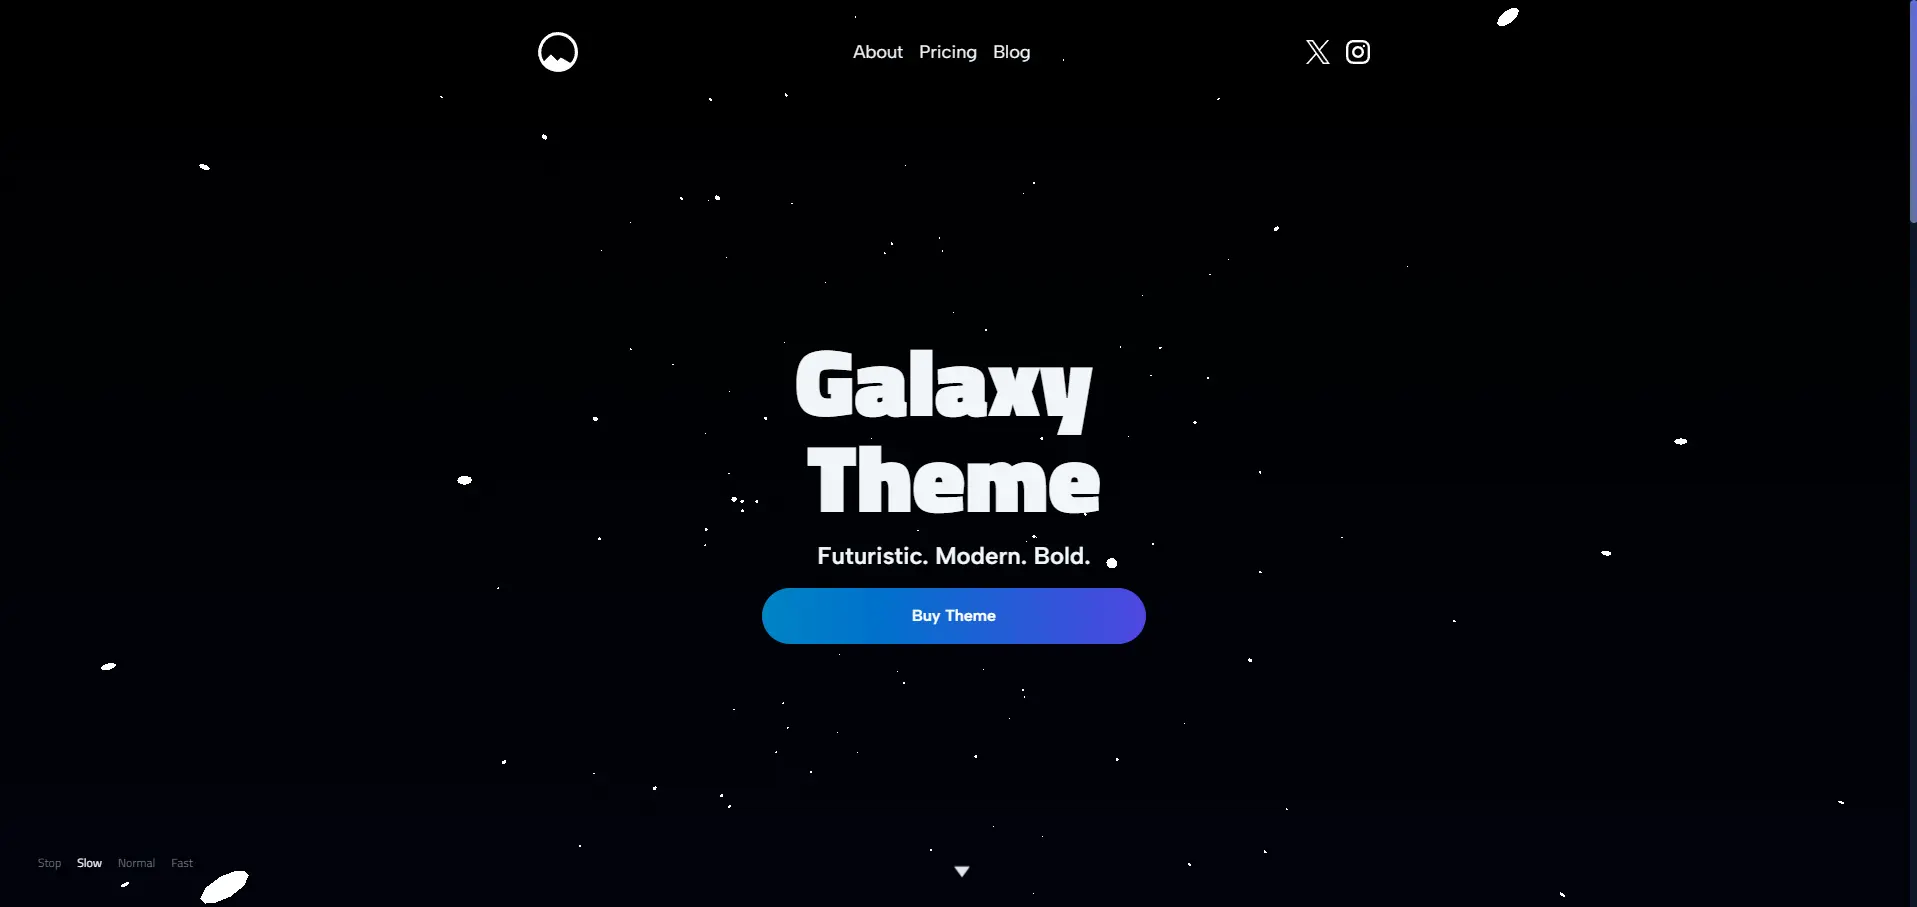 Galaxy Theme by FutureThemes